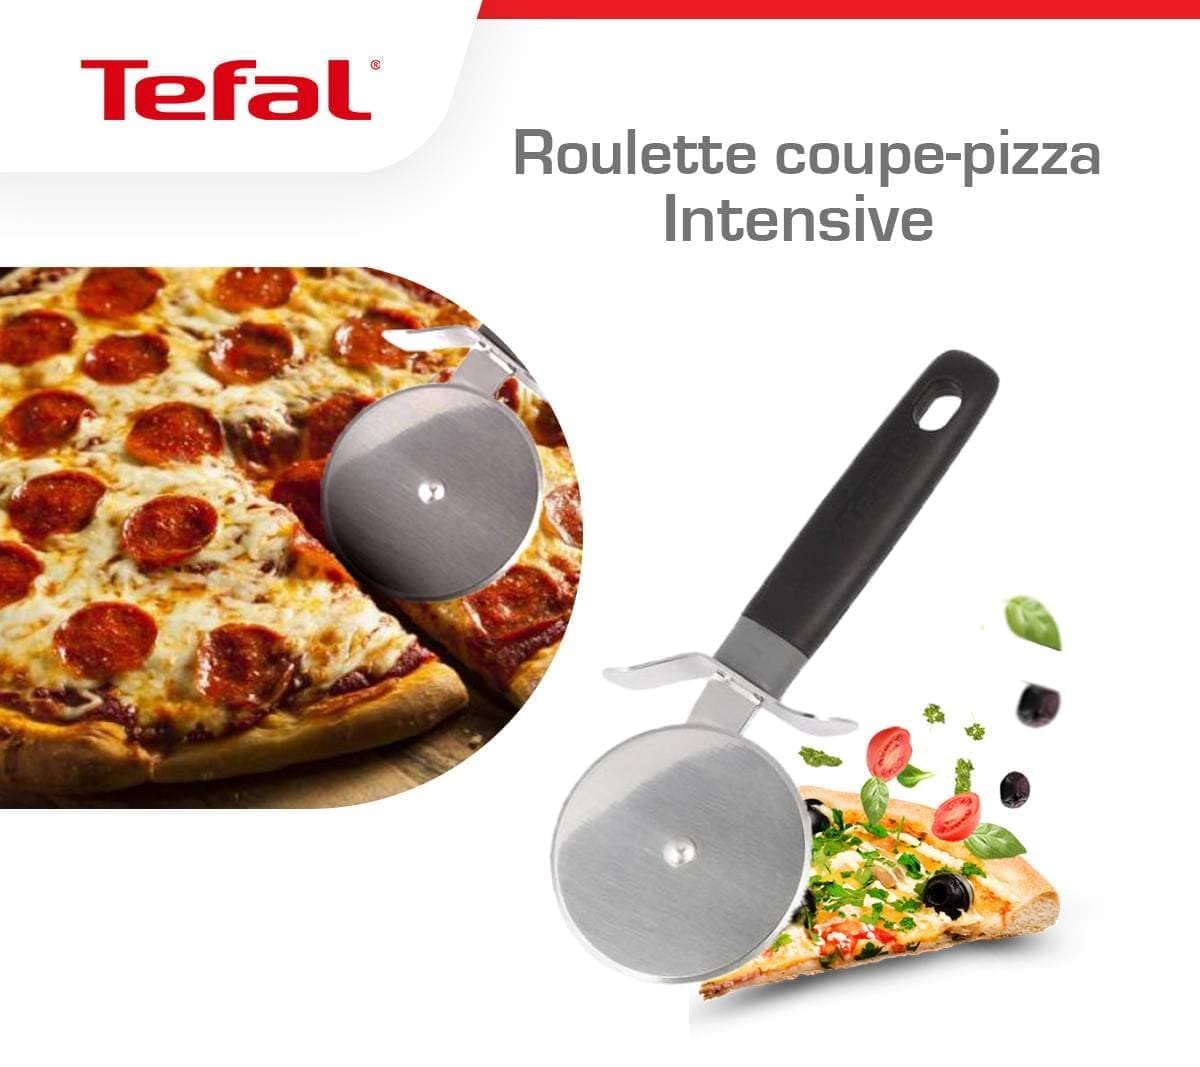 Tefal heavy duty pizza cutter